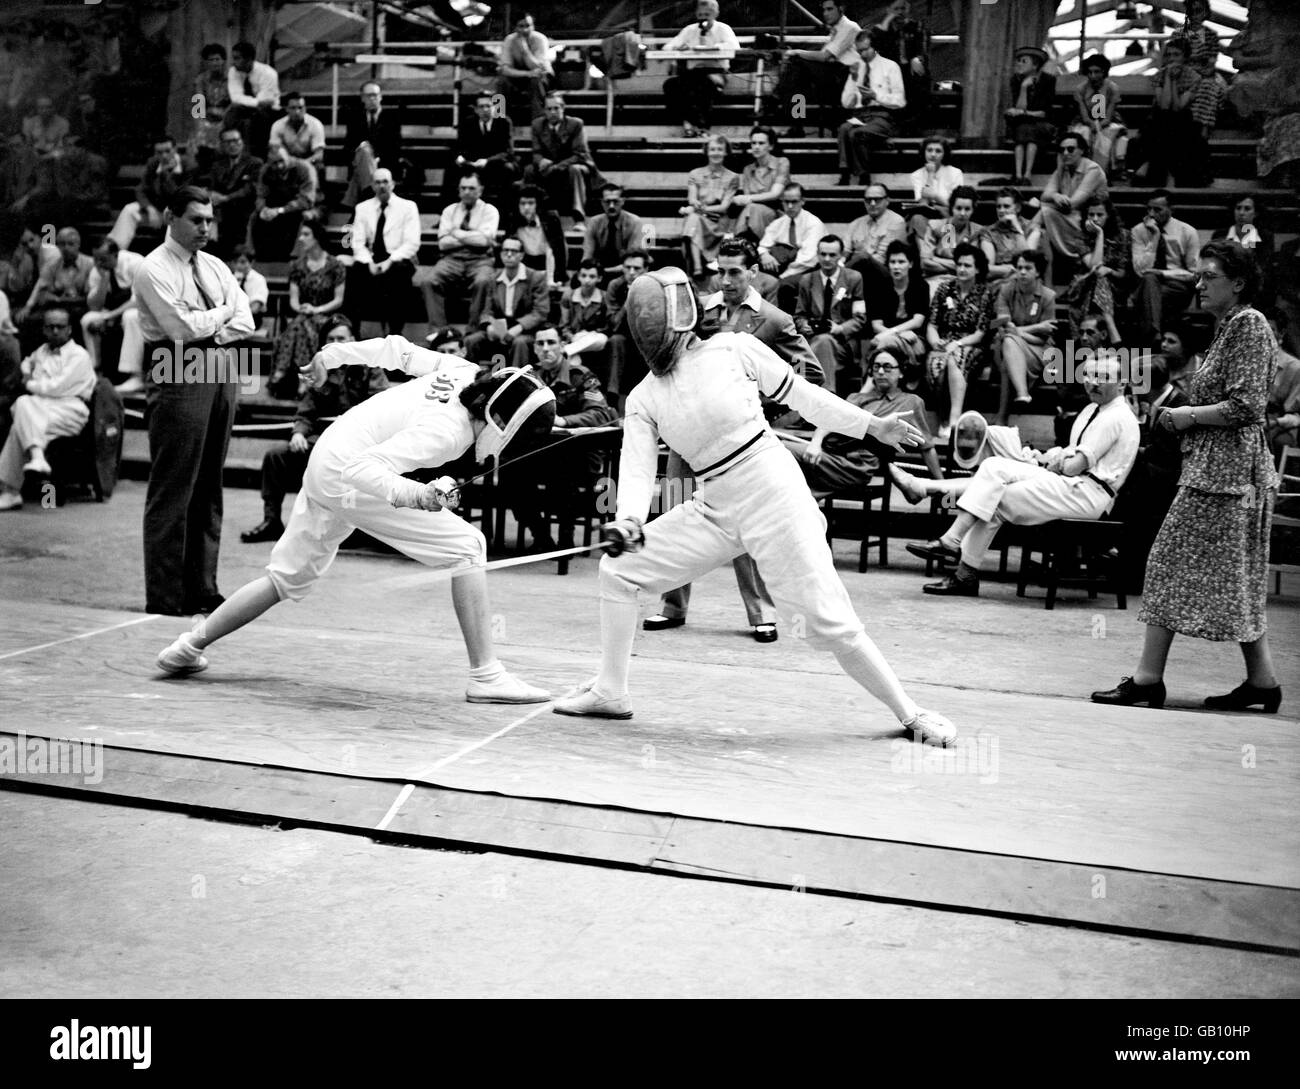 Juegos Olímpicos de Londres 1948 - vallas - Palacio de ingeniería Foto de stock